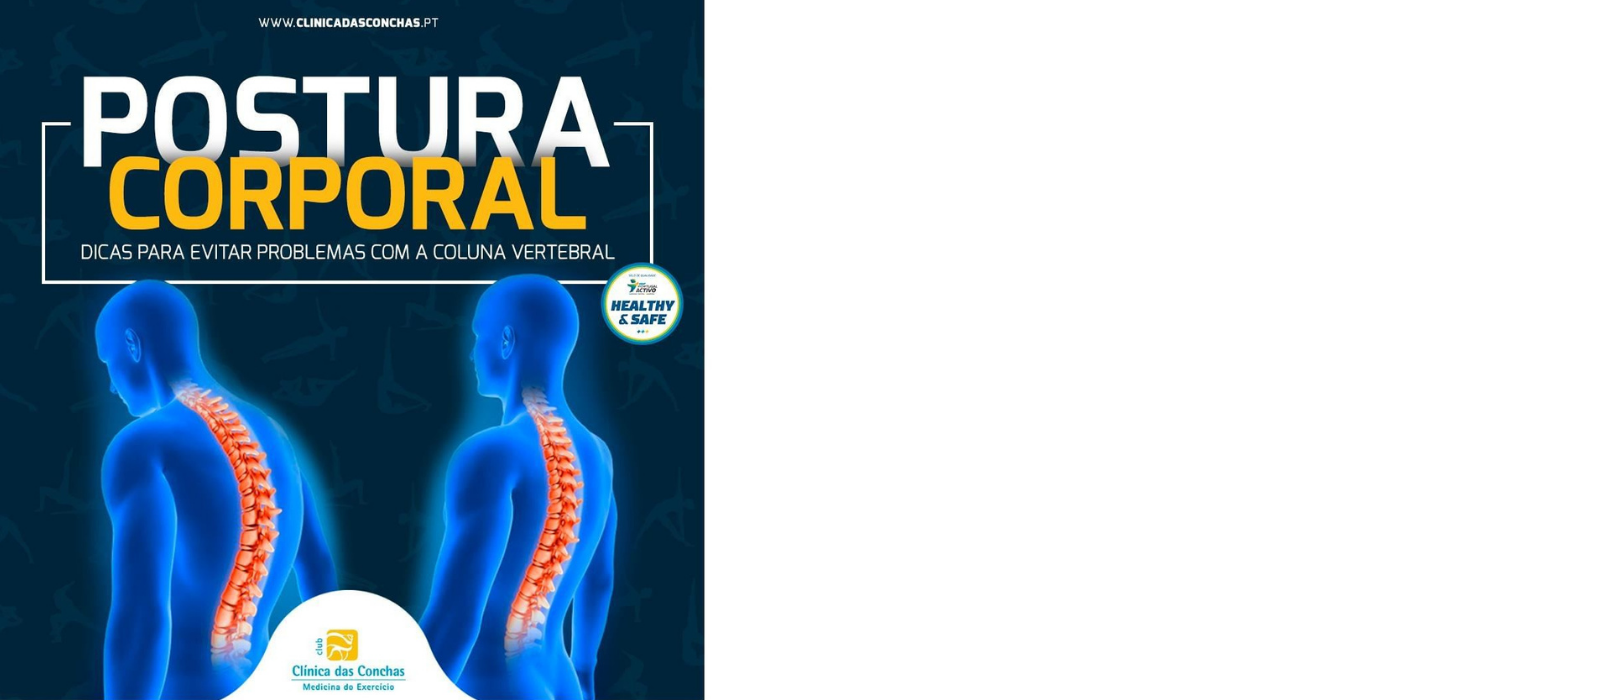 Postura Corporal - Dicas para evitar problemas com a coluna vertebral